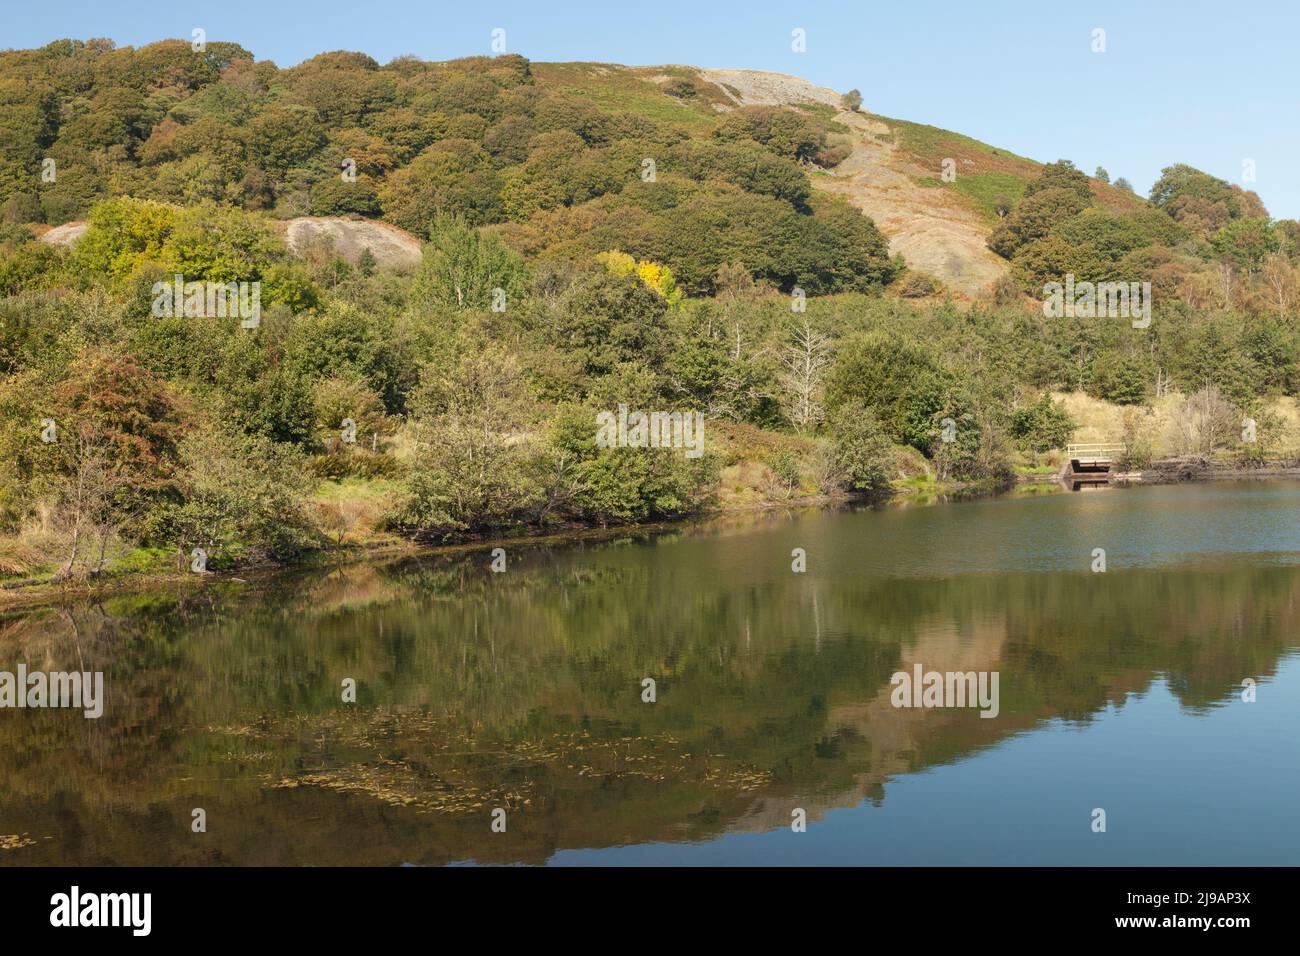 Le lac Supérieur, Dare Valley Country Park, Aberdare, Côte d'Azur, dans le sud du Pays de Galles, Royaume-Uni Banque D'Images